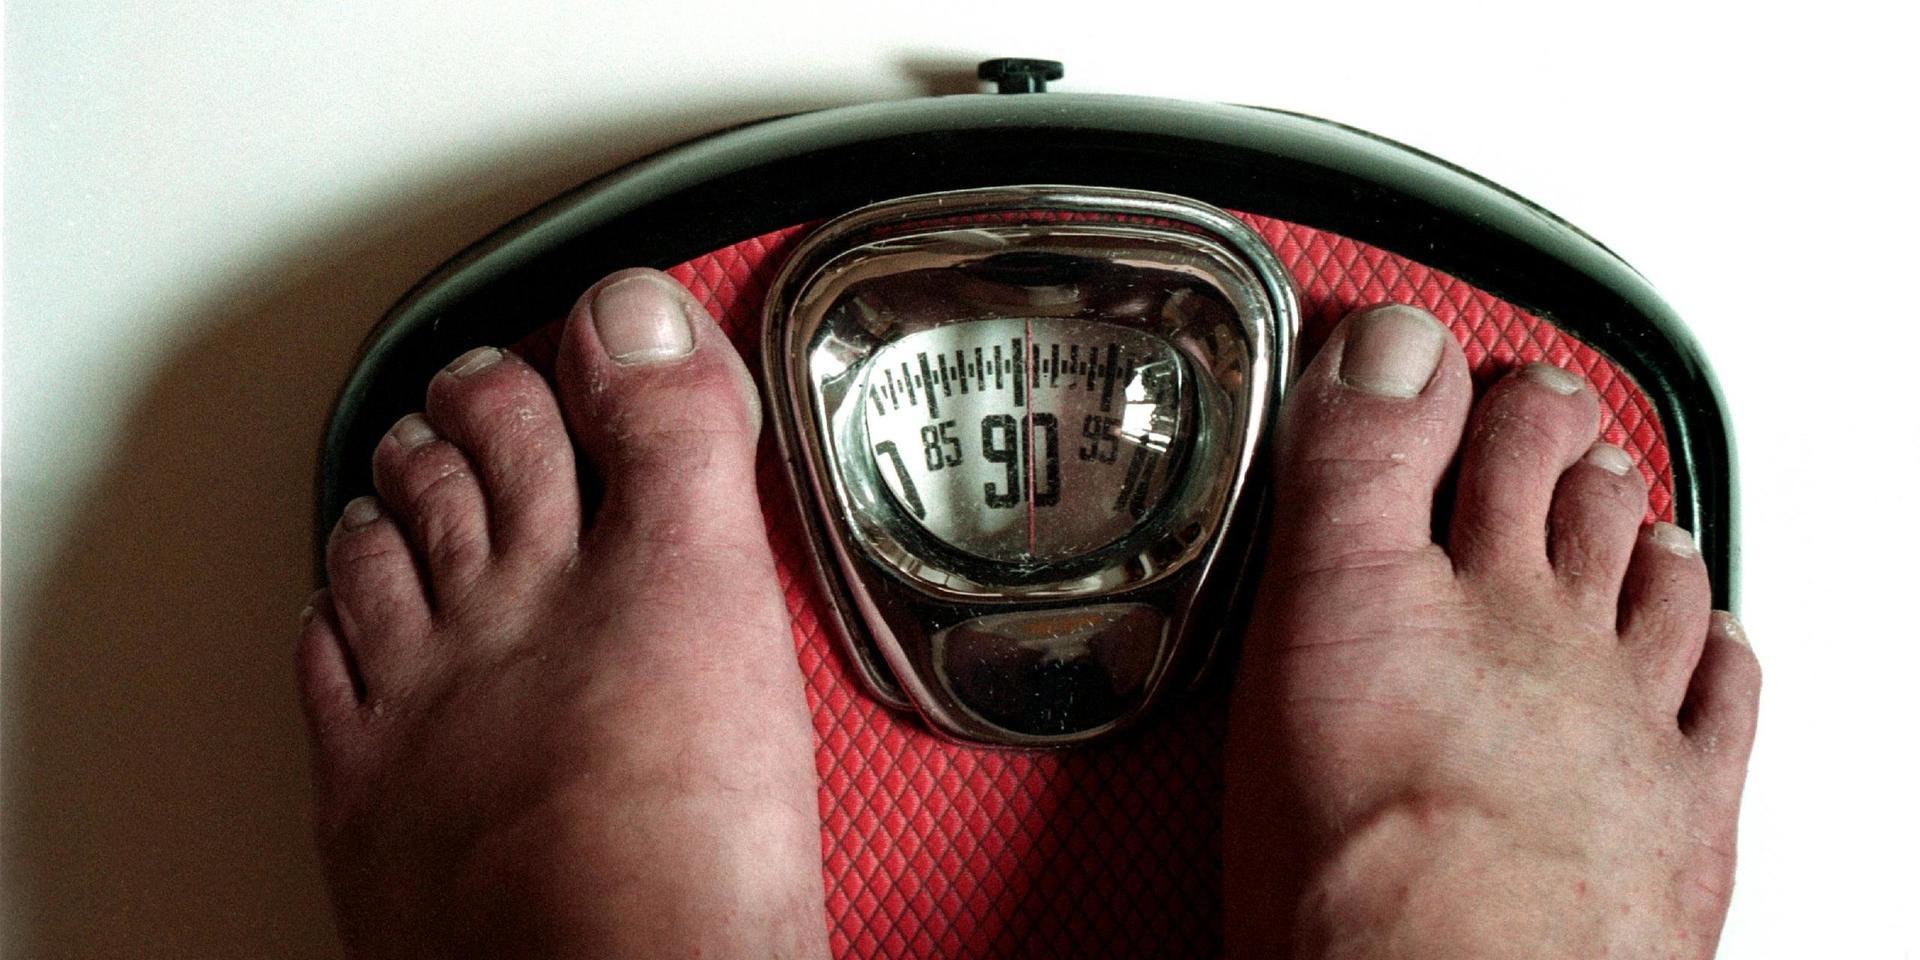 BMI, Body mass index, är ett mått som räknas ut utifrån hur mycket en person väger i förhållande till sin längd.